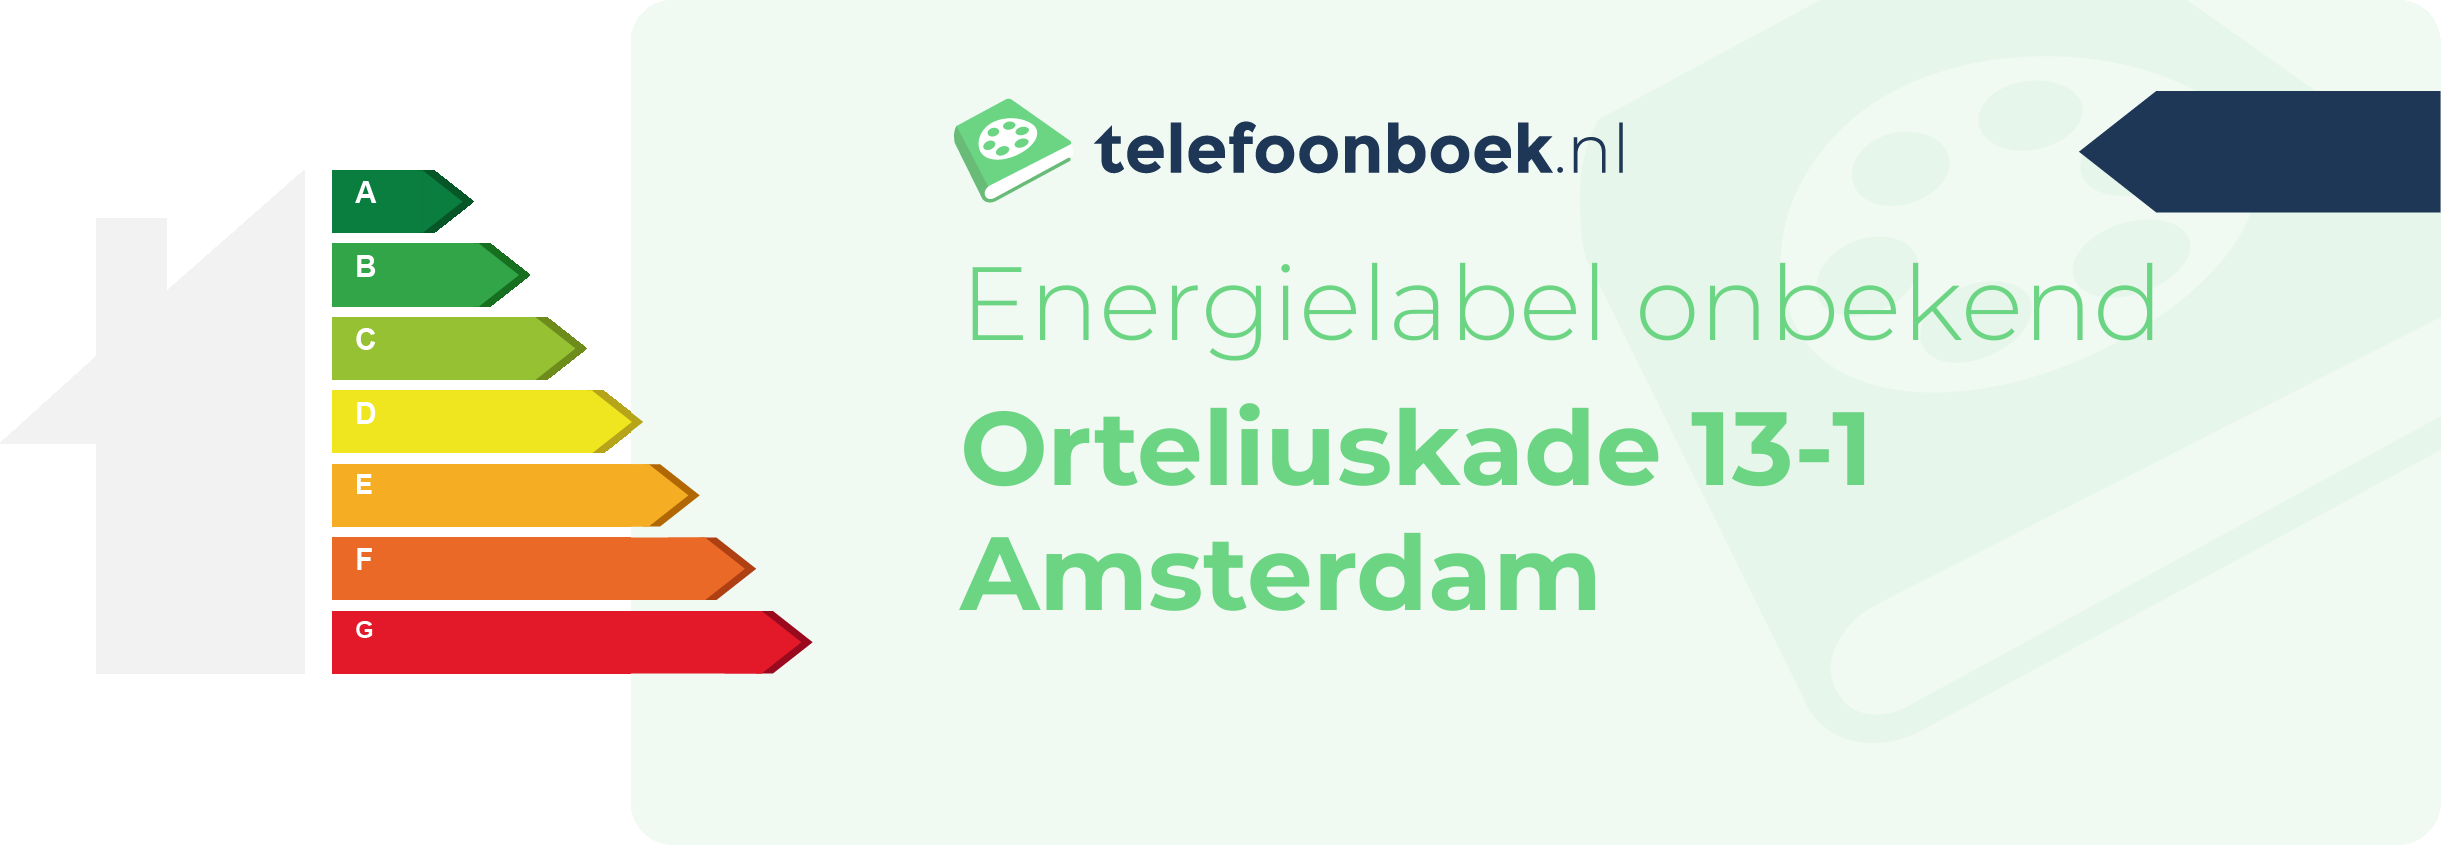 Energielabel Orteliuskade 13-1 Amsterdam